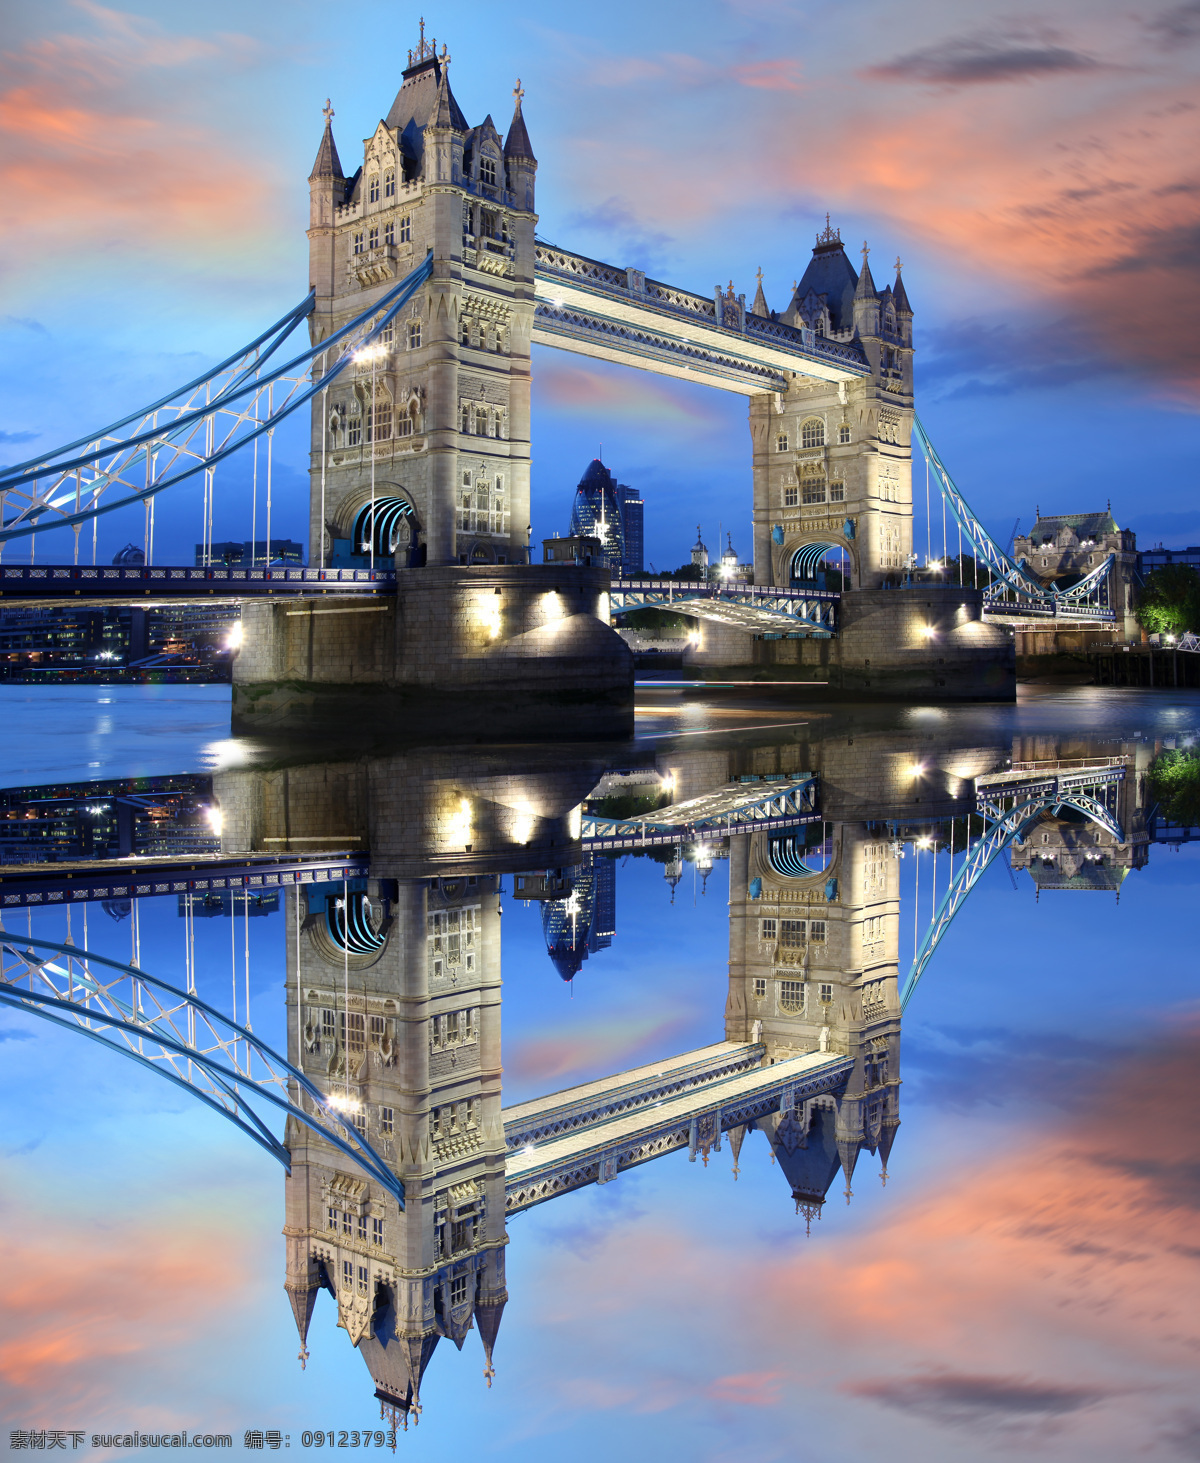 傍晚 美丽 伦敦 塔桥 伦敦塔桥夜景 伦敦塔桥 伦敦风景 城市风景 英国旅游景点 建筑设计 环境家居